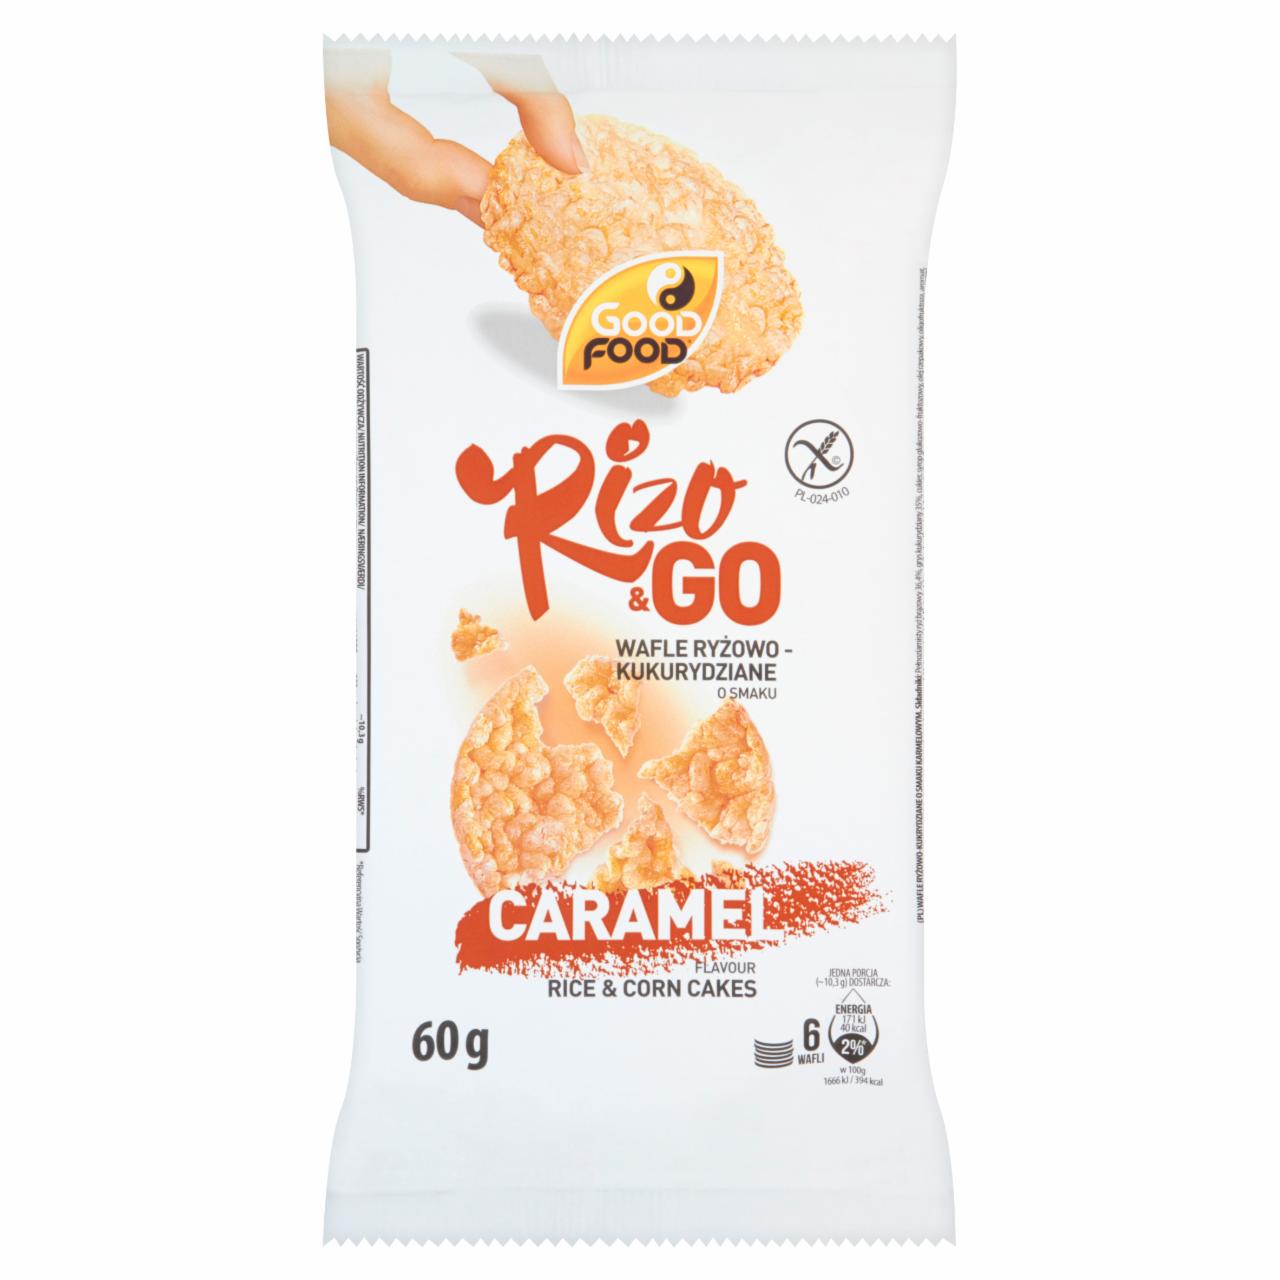 Zdjęcia - Good Food Rizo & Go Wafle ryżowo-kukurydziane o smaku karmelowym 60 g (6 sztuk)